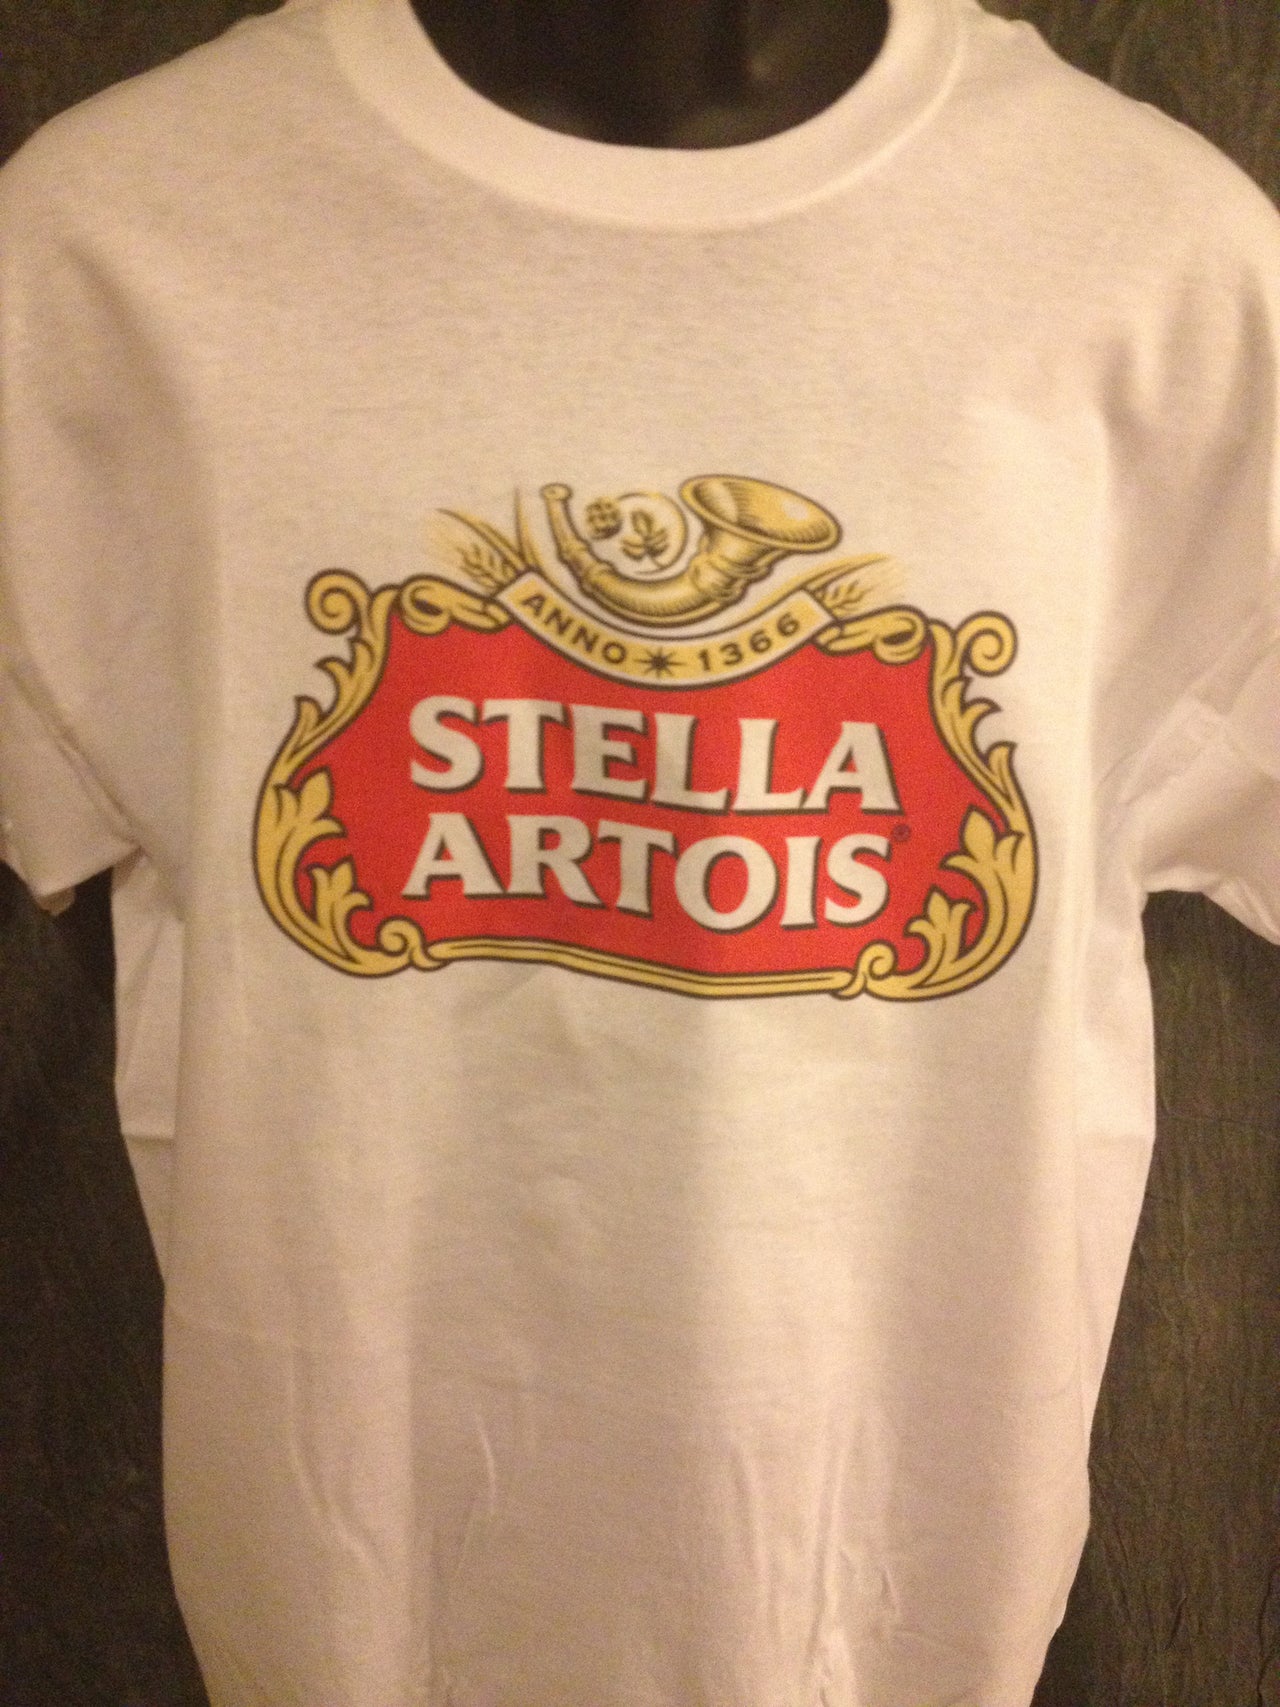 Stella Artois Beer Tshirt - TshirtNow.net - 3